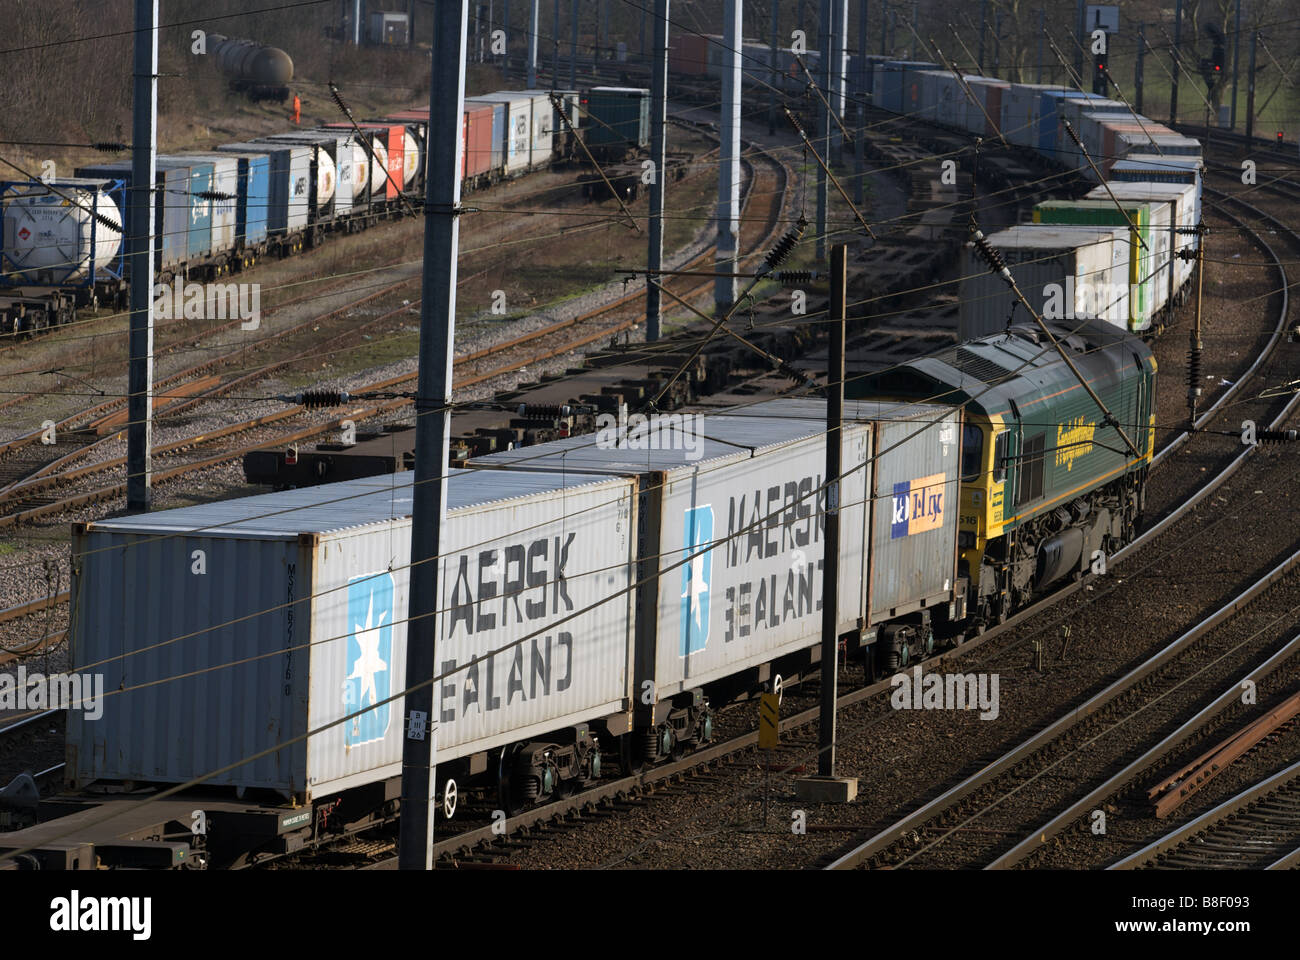 Freightliner freight train, Ipswich, Suffolk, UK. Stock Photo